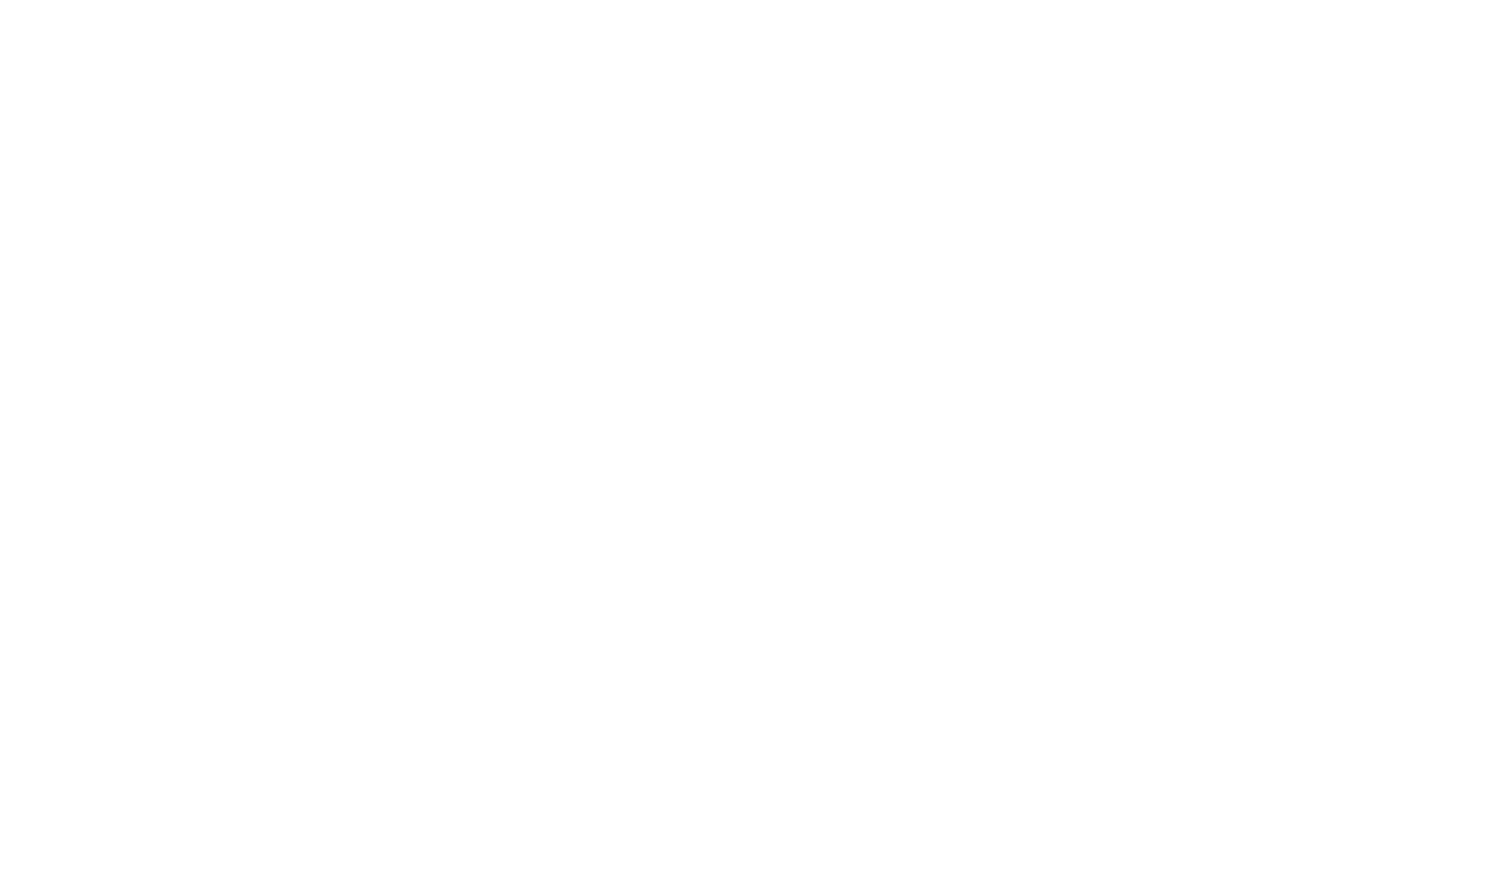 Quieter Handful